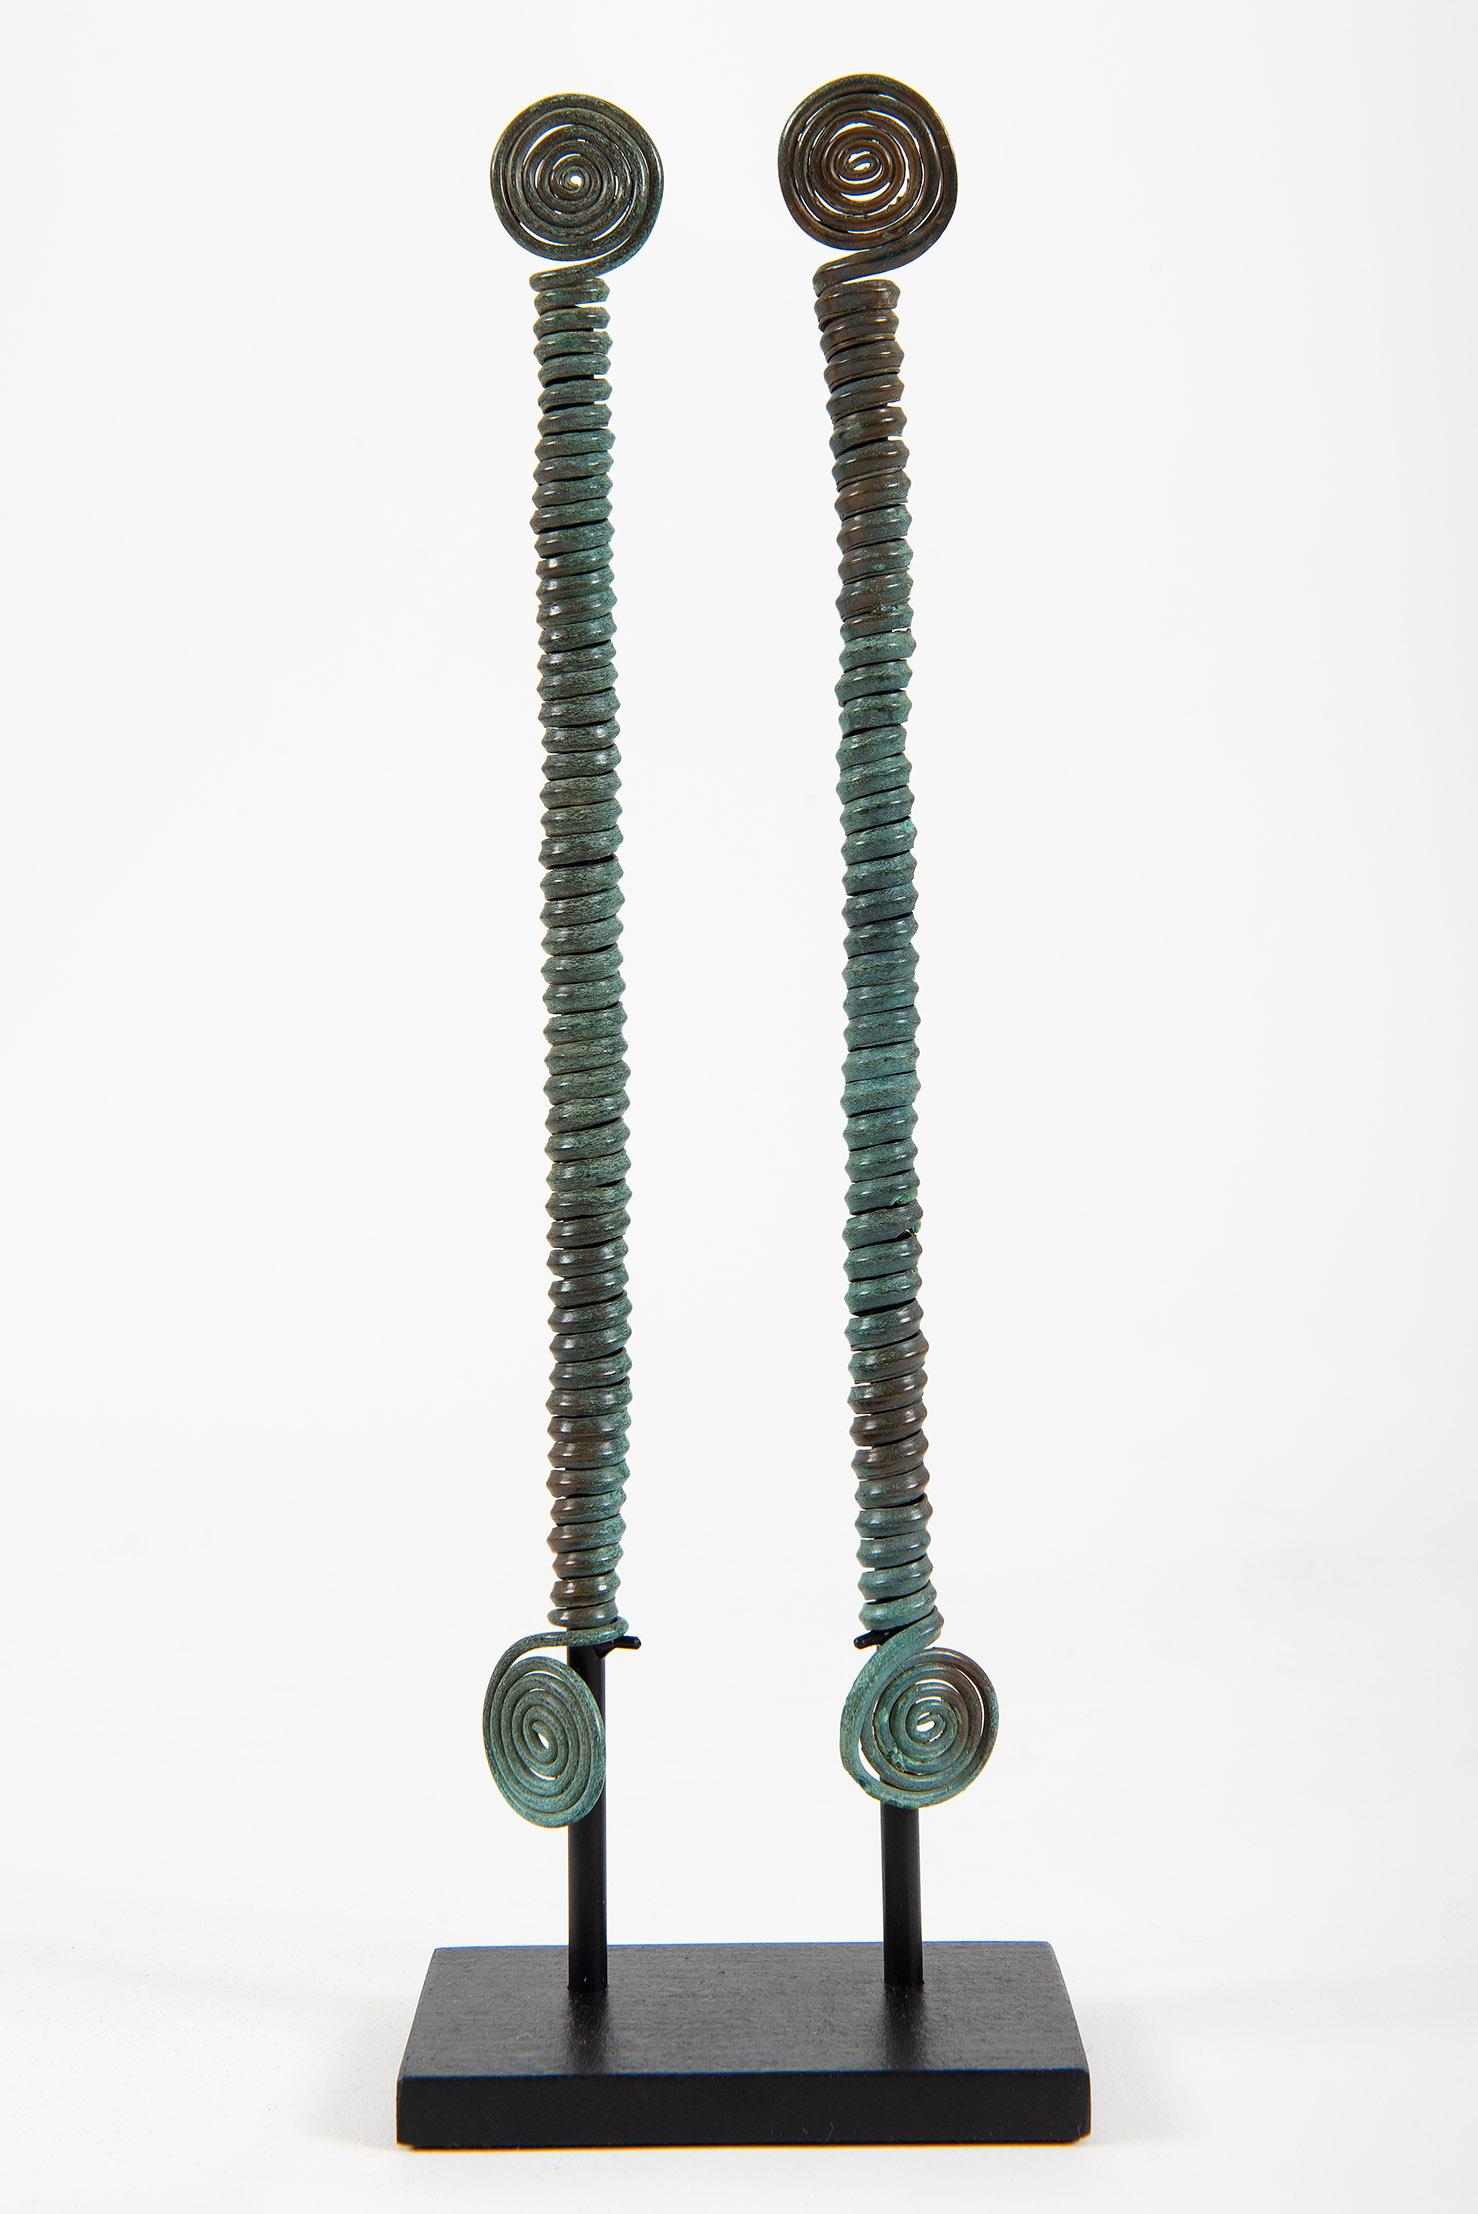 Two spiral pins fibula, Hallstatt, 1st Iron Age, Bronze, Sculpture, Antiquities - Art by Unknown